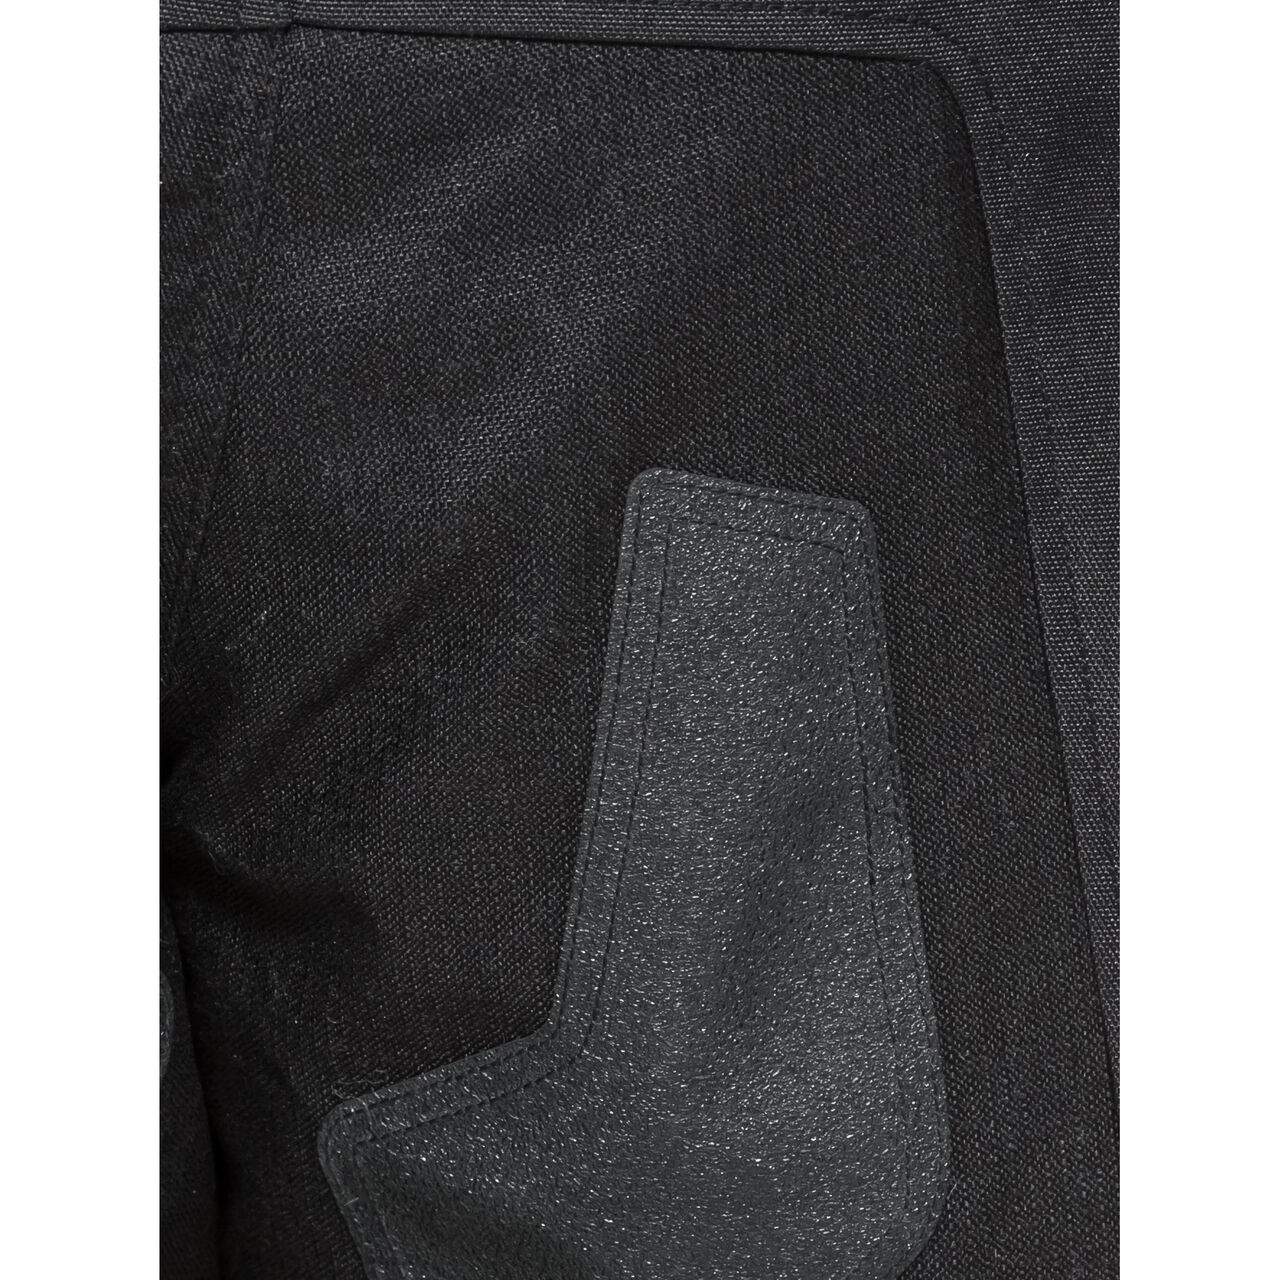 Cedar WP Textile trousers black M